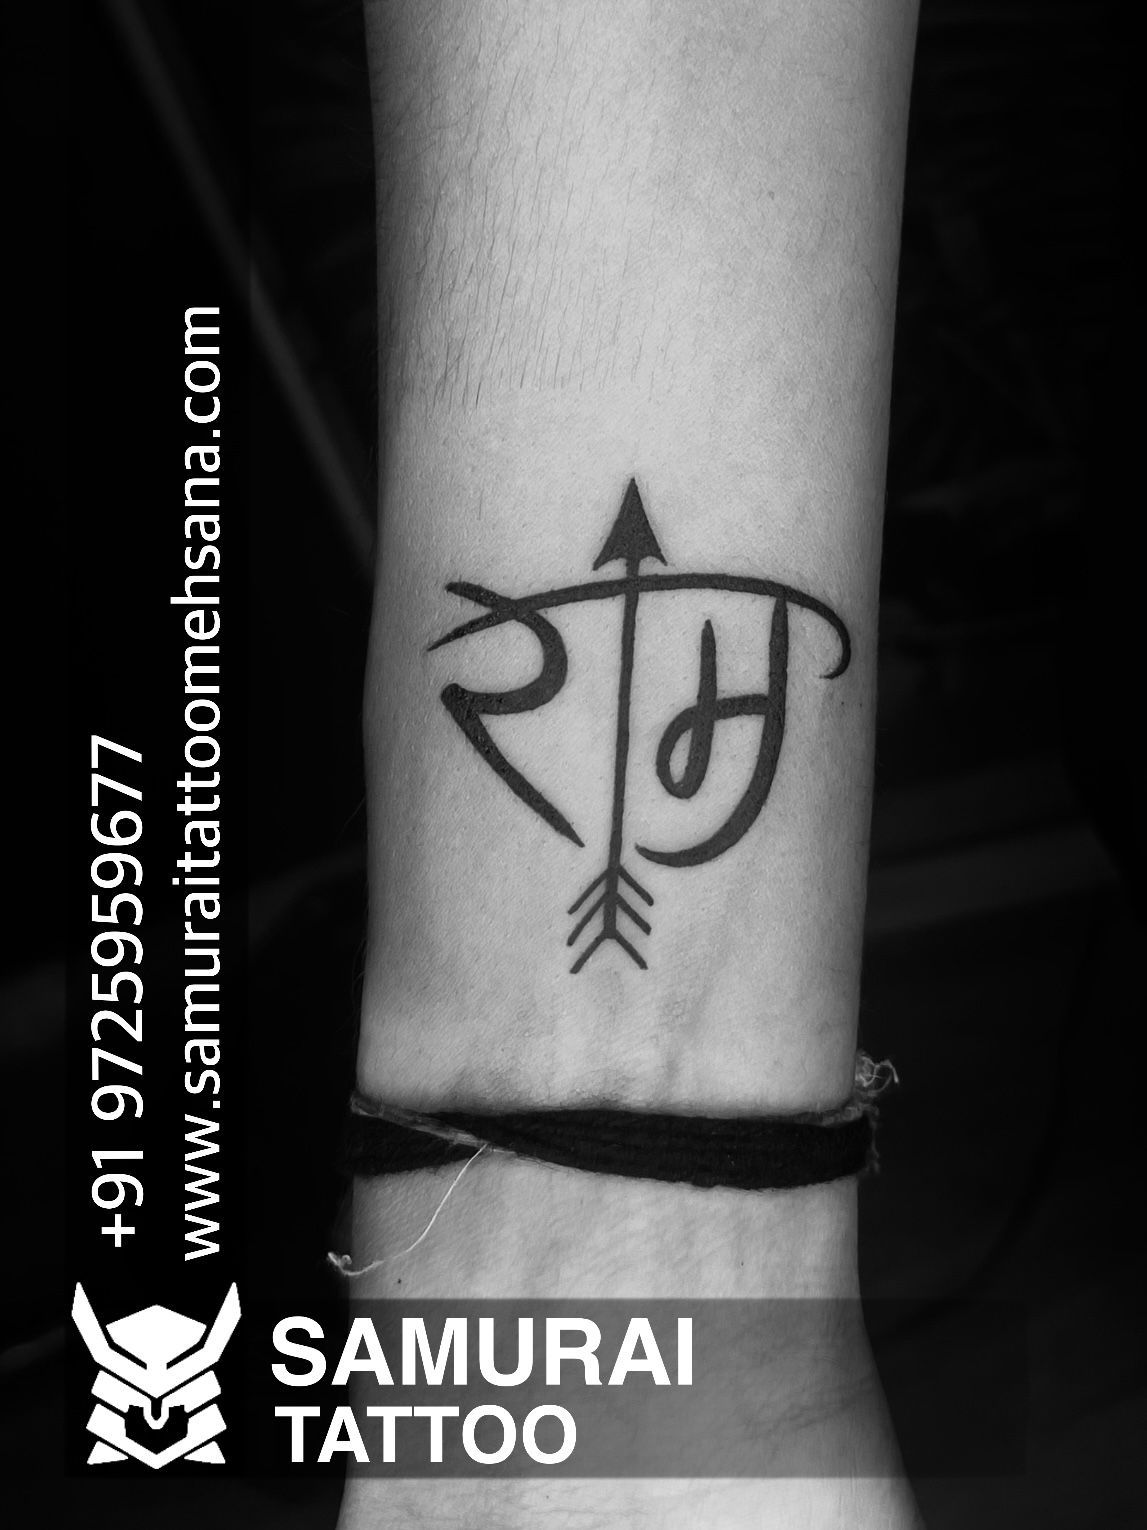 ram tattoo |Lord ram tattoo |Shree ram tattoo | Band tattoo designs, Tattoo  designs, Ram tattoo